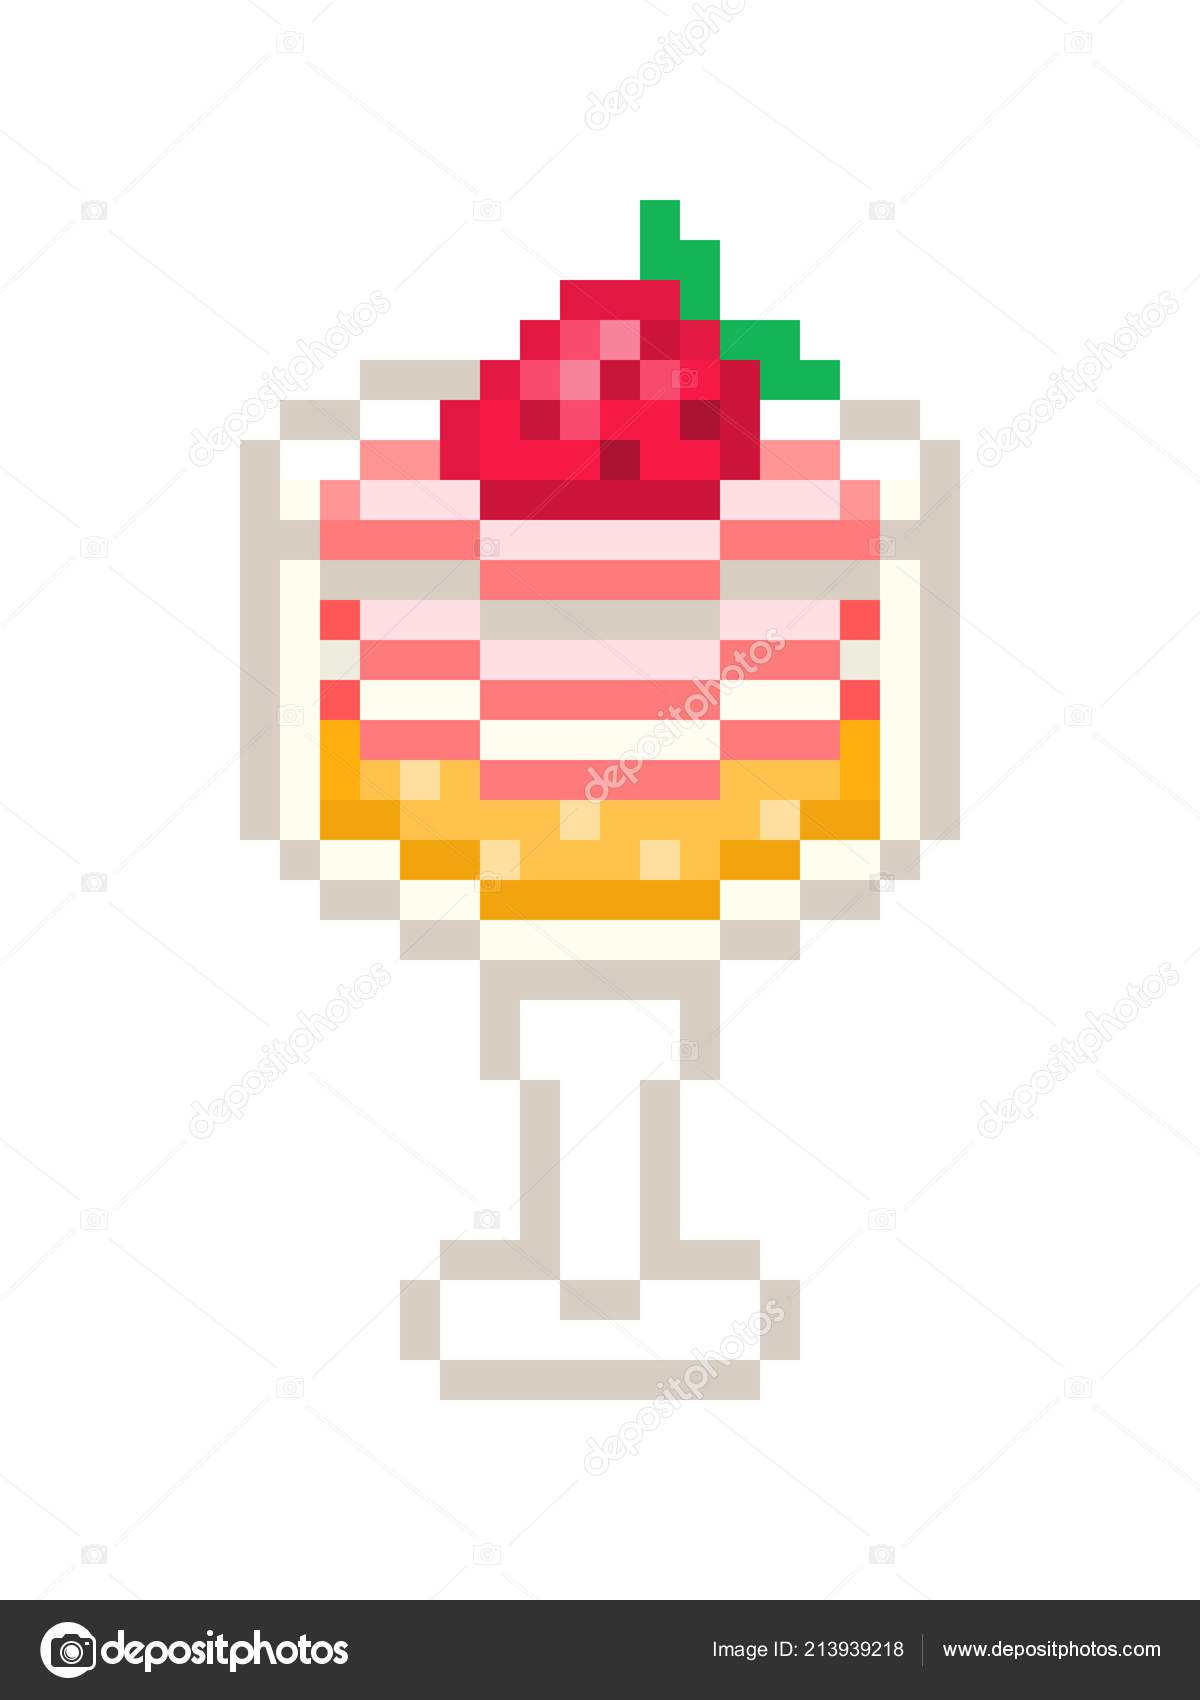 Menu de sorvete de pixel art, ícone vetorial de menu de papel